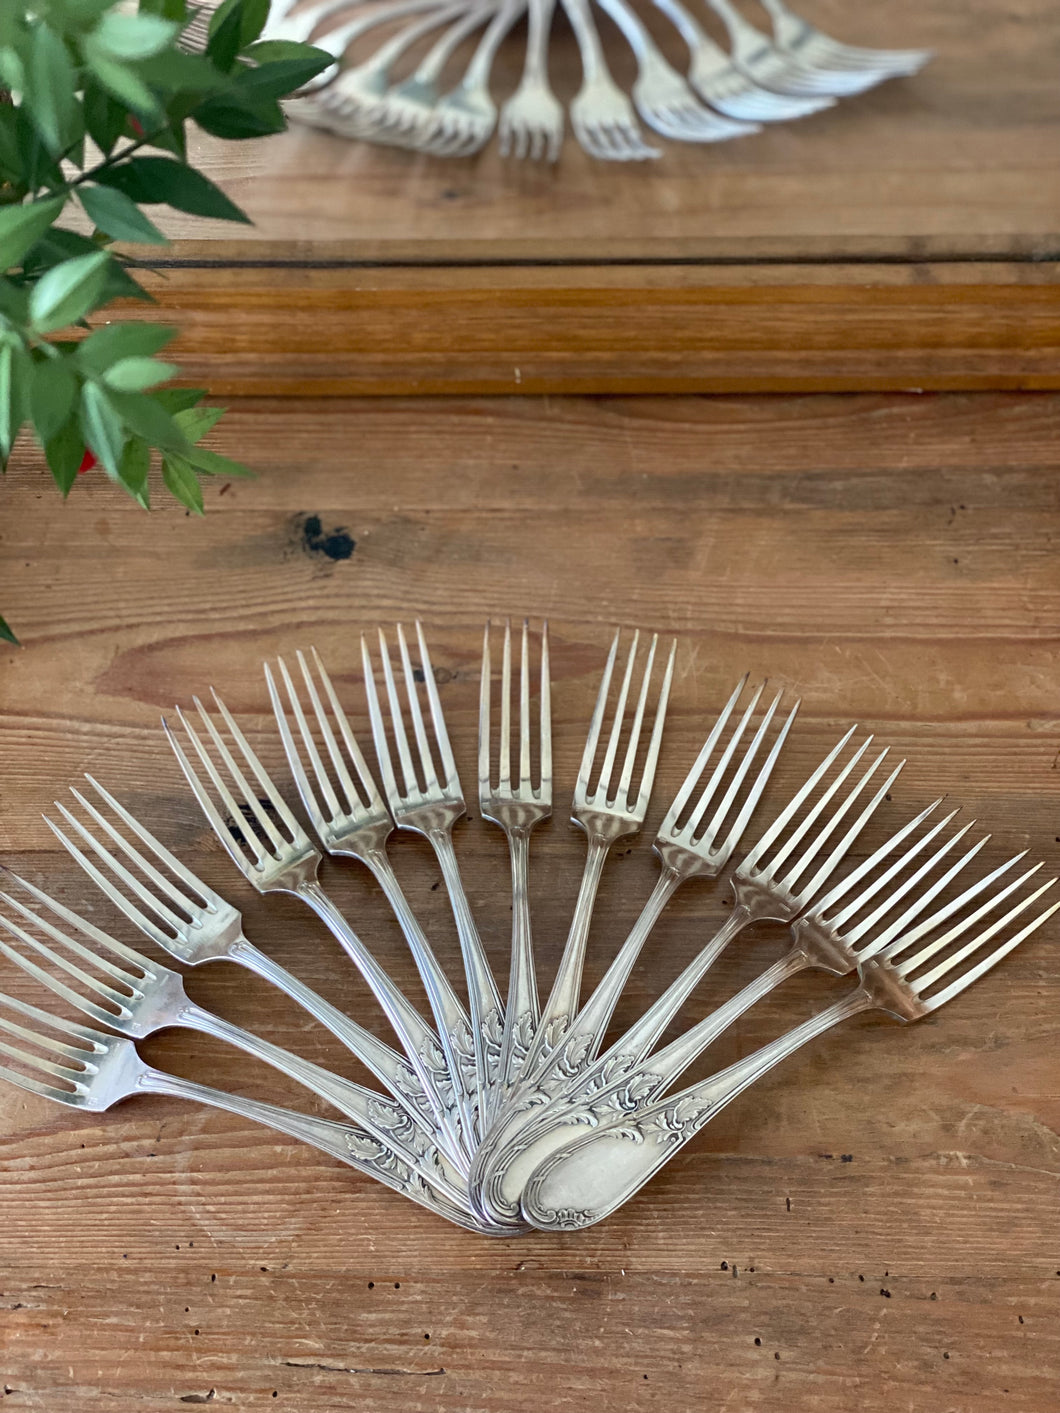 12 fourchettes en métal argenté vintage